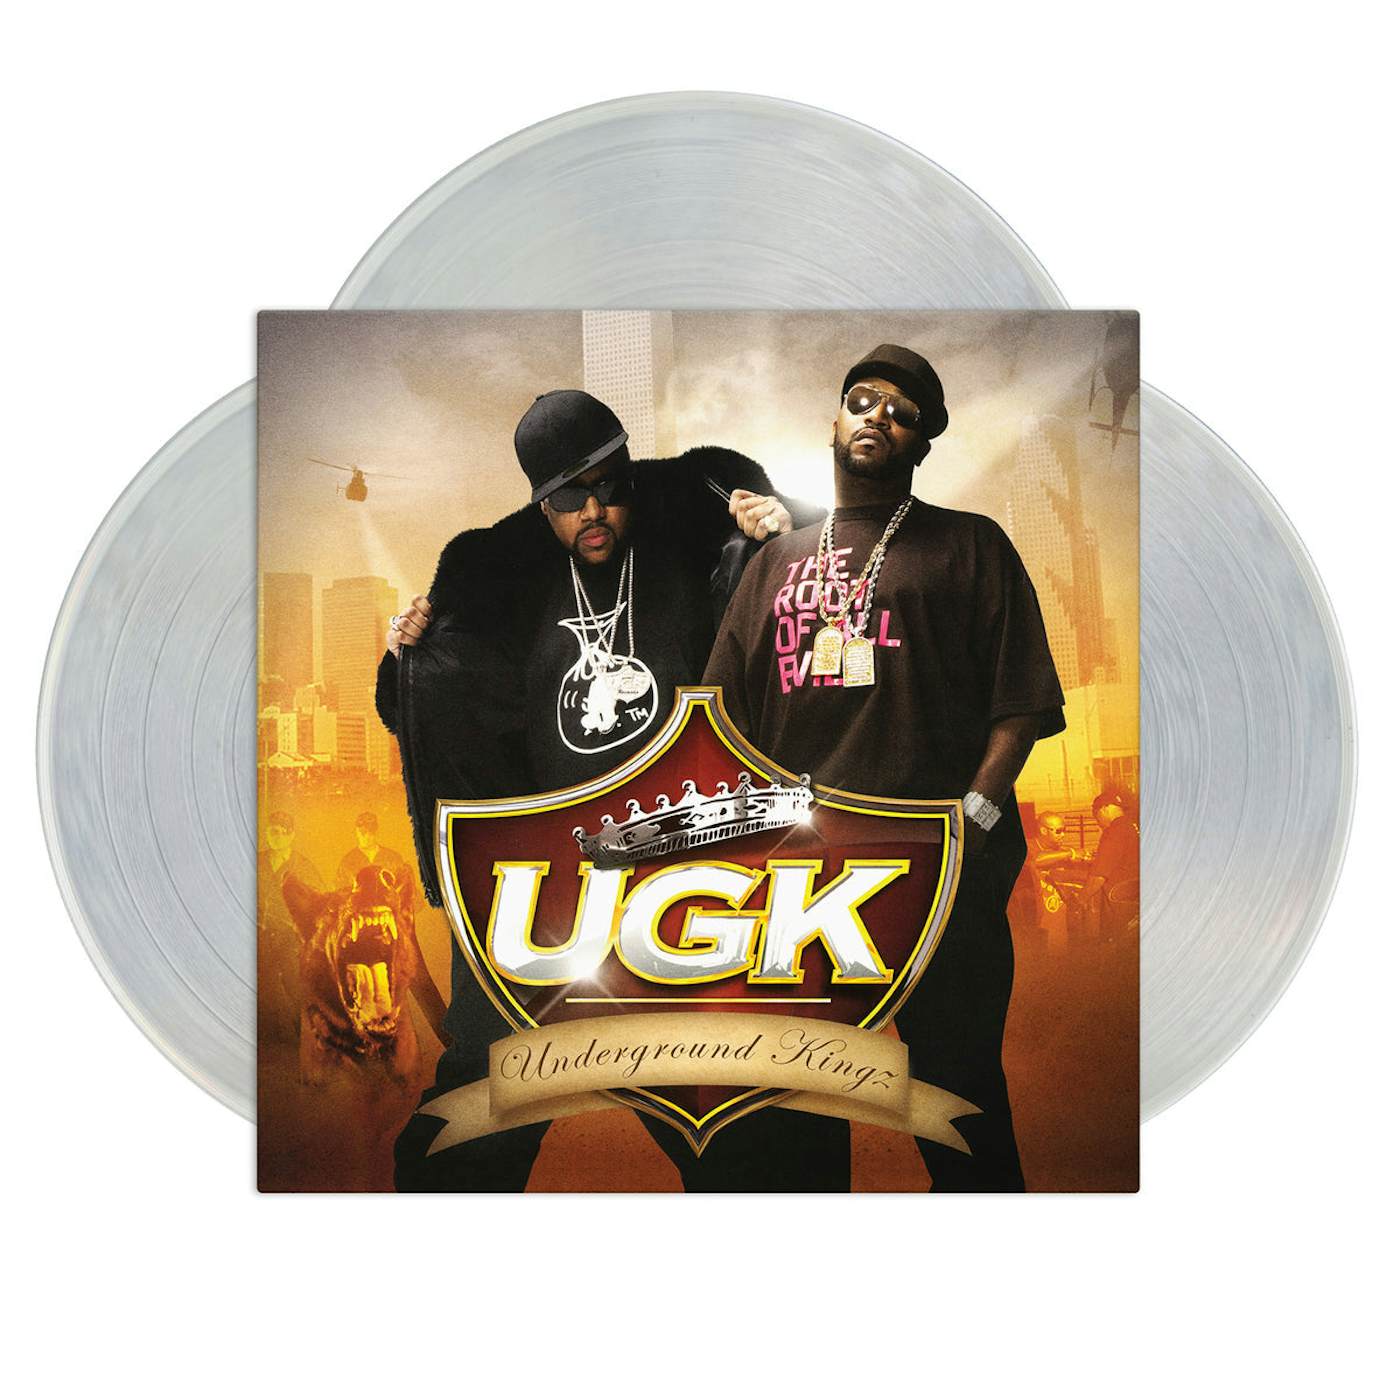 U.G.K. - BANNED - BIG TYME 112 - CD